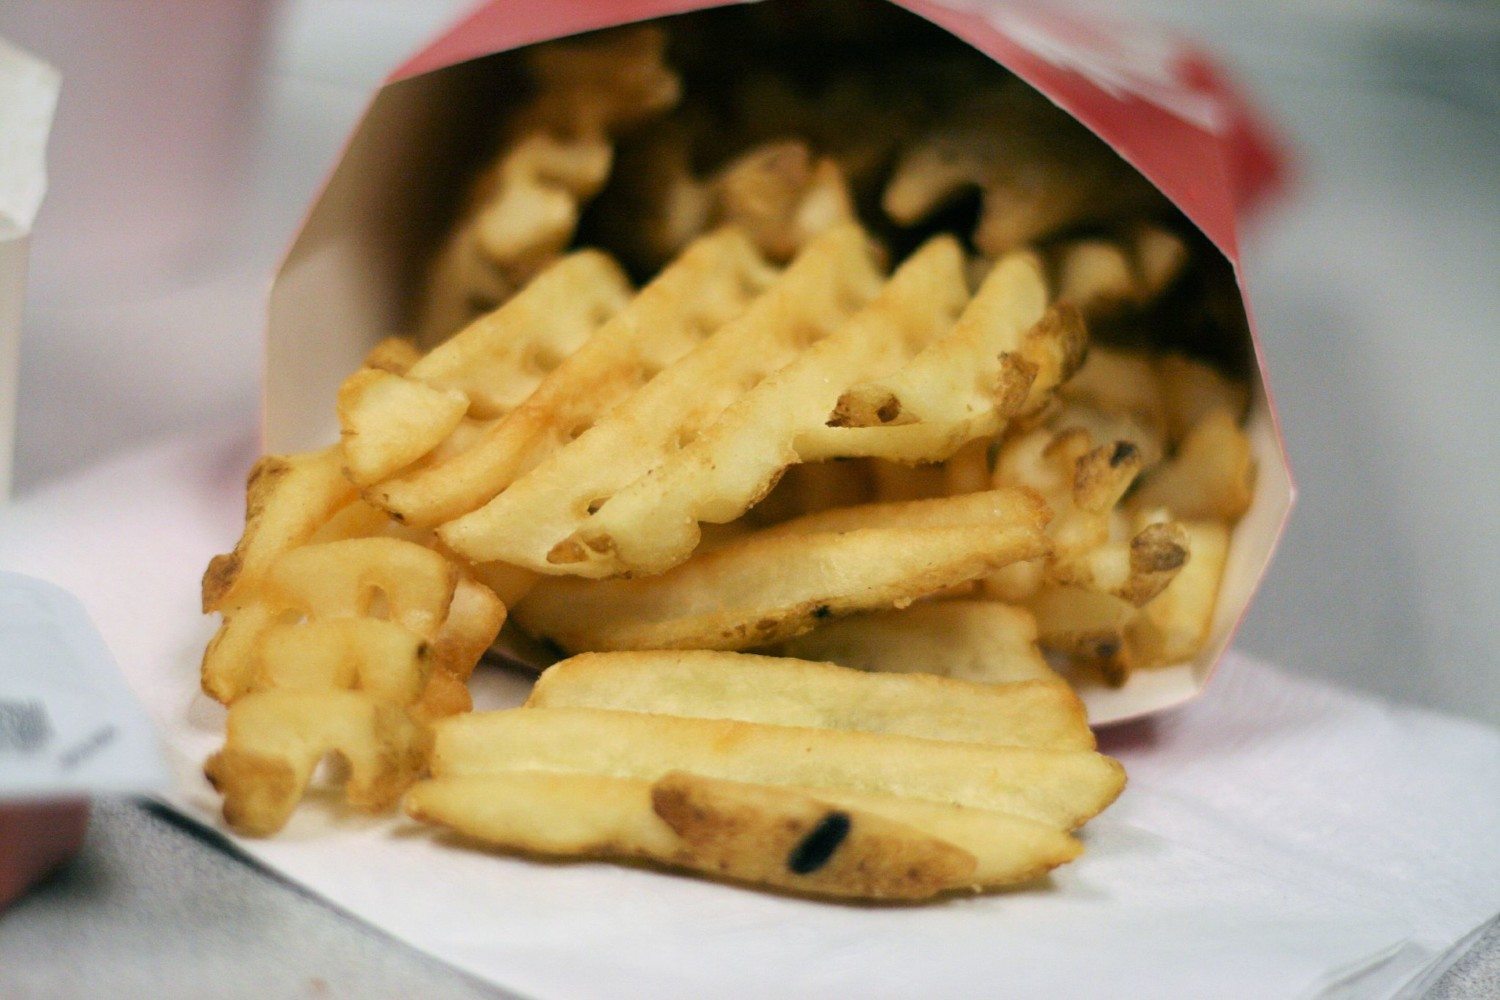 chick fil a waffle fries photo